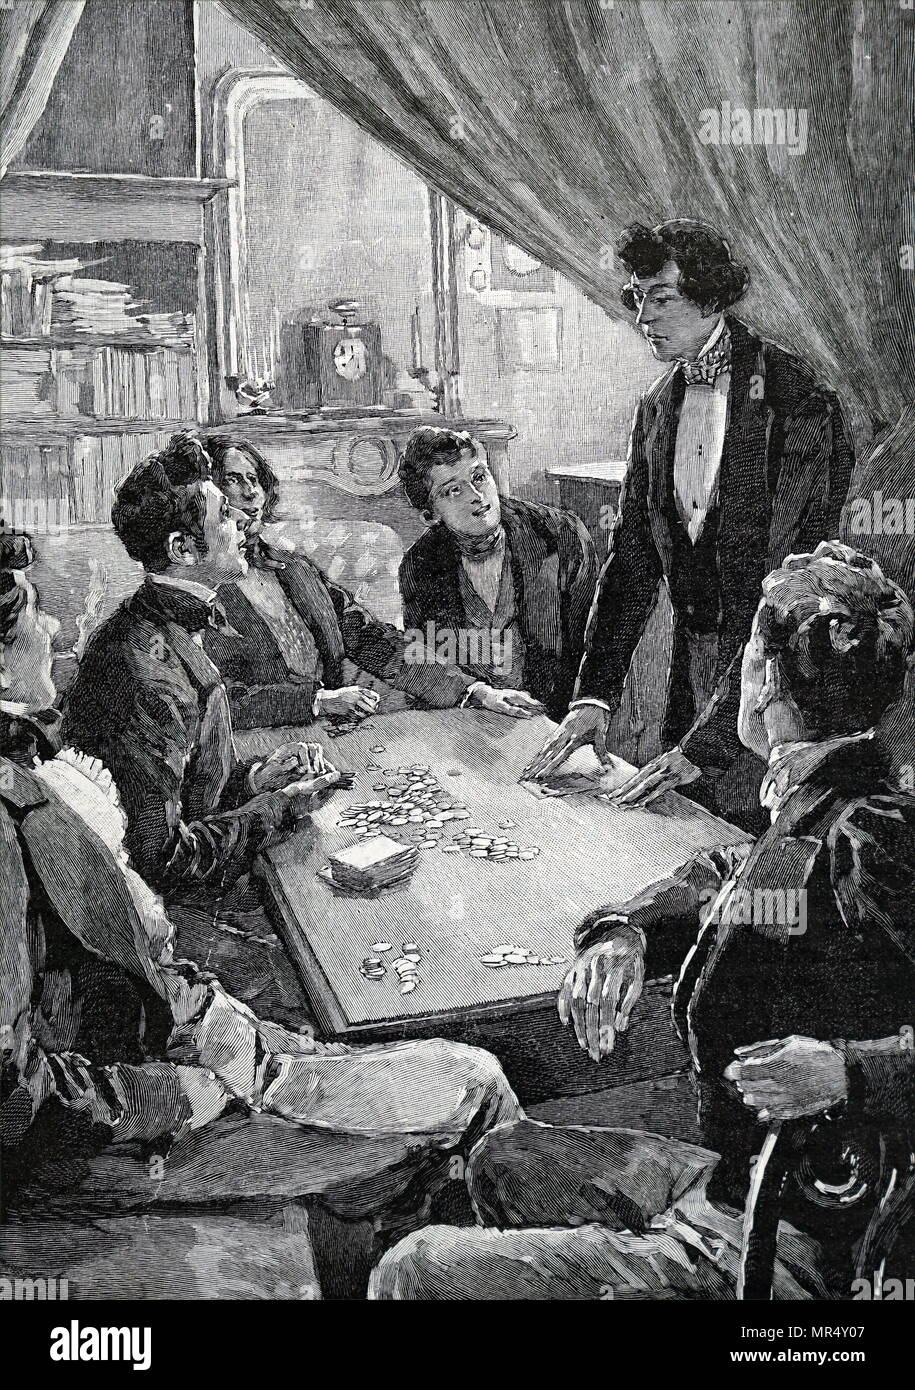 Illustrazione raffigurante Uomini giocando a carte, in primo piano una giovane donna versa il tè. Datata del XIX secolo Foto Stock